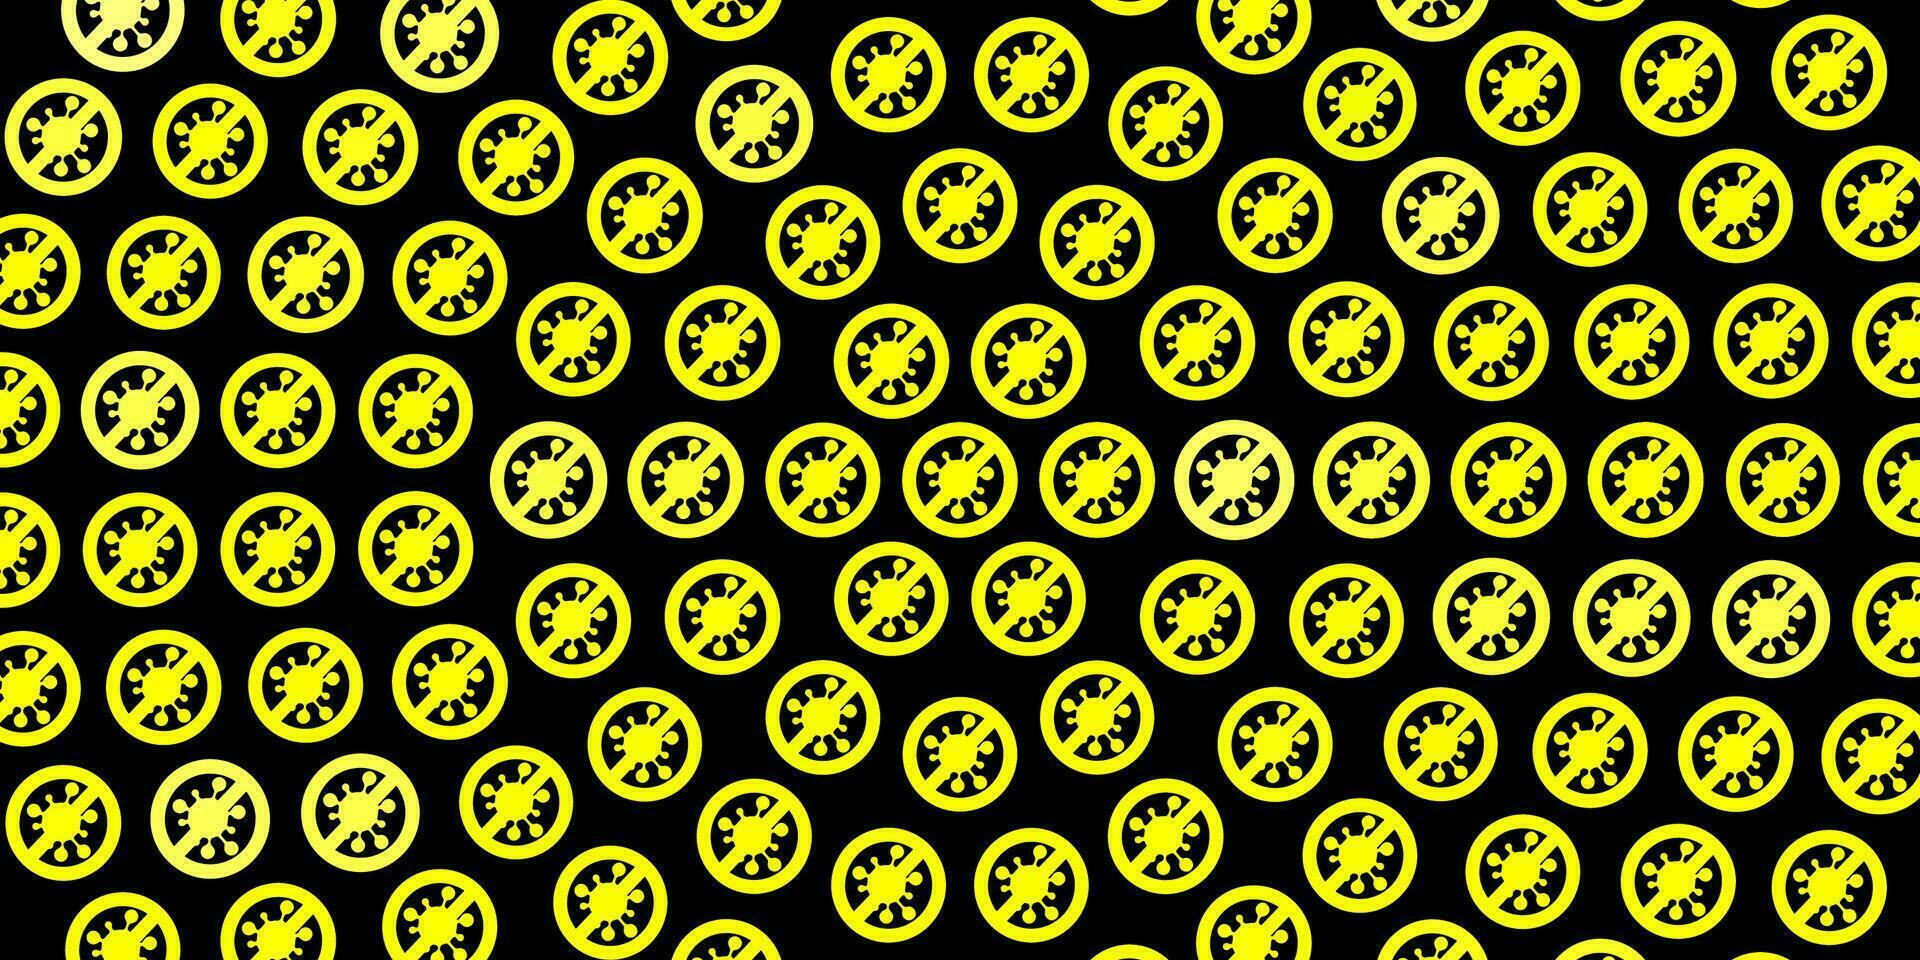 sfondo vettoriale giallo scuro con simboli covid-19.